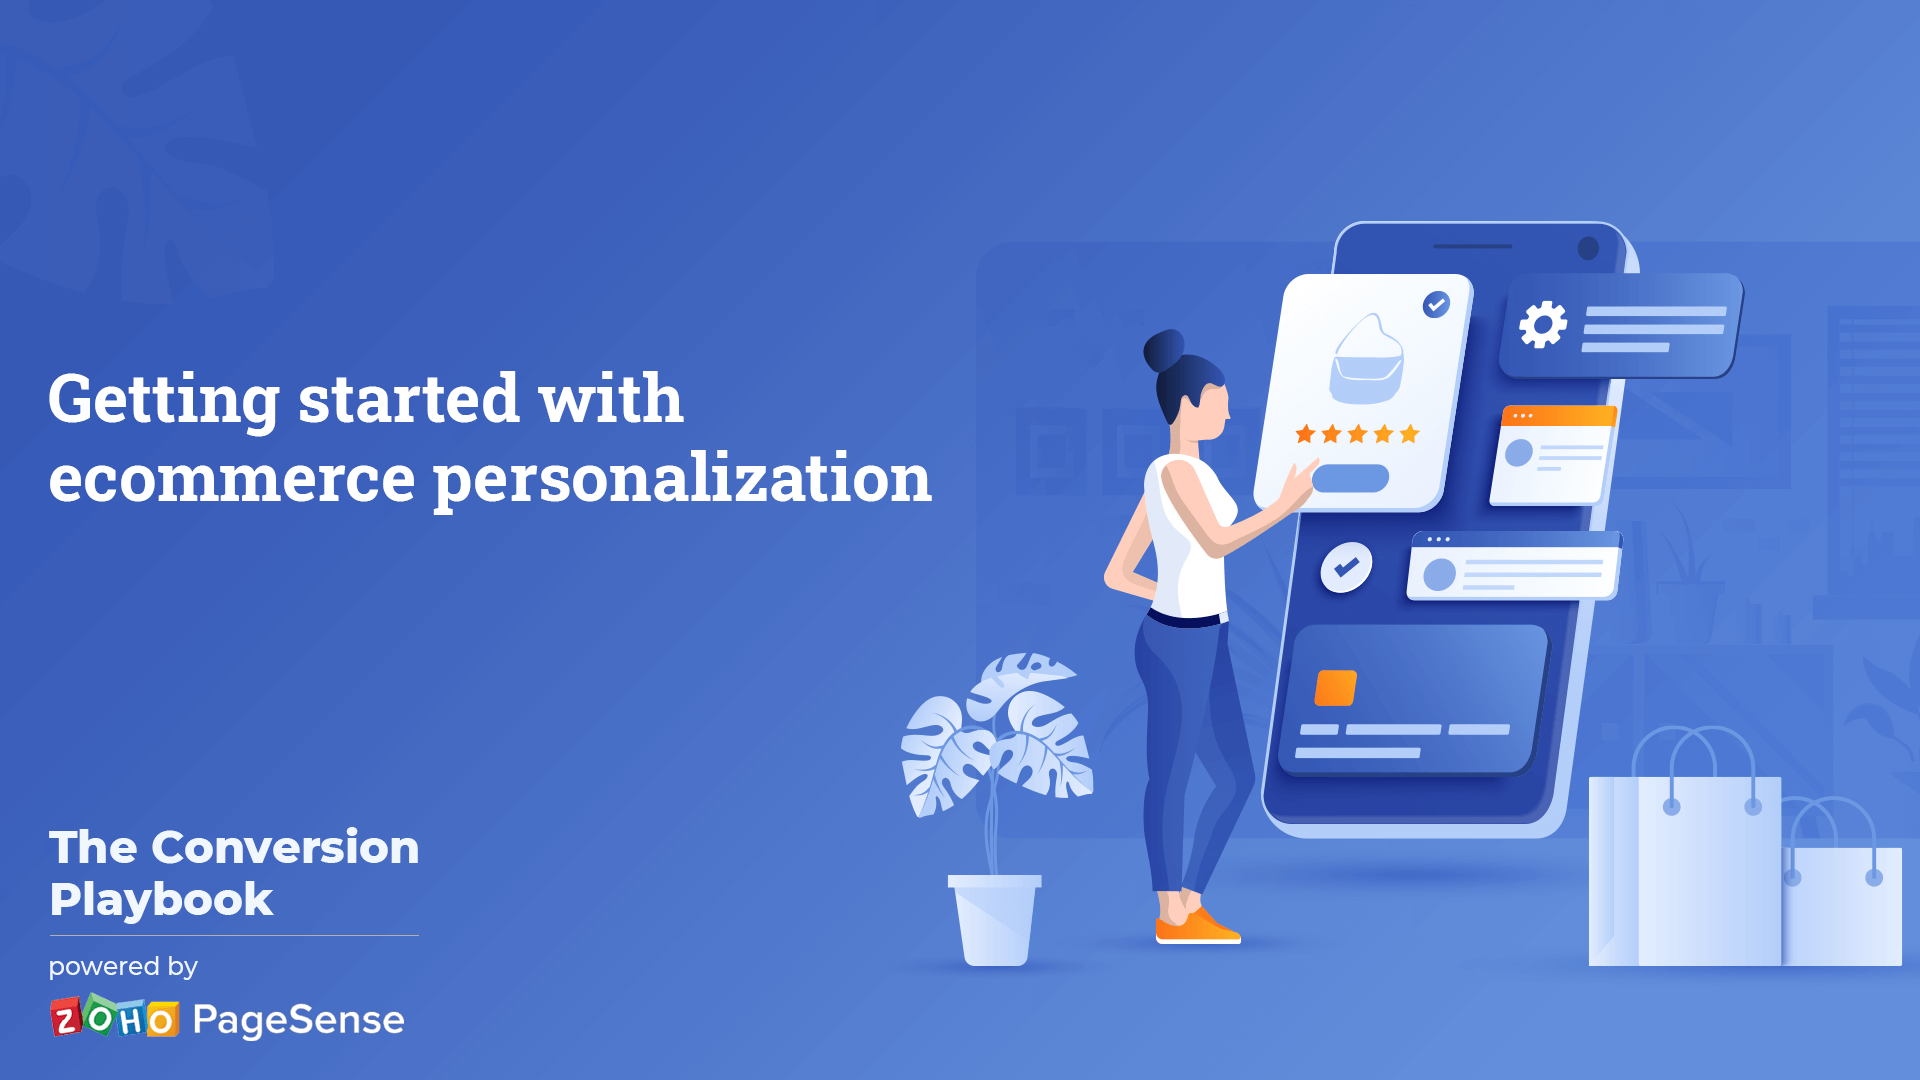 ecommerce personalization